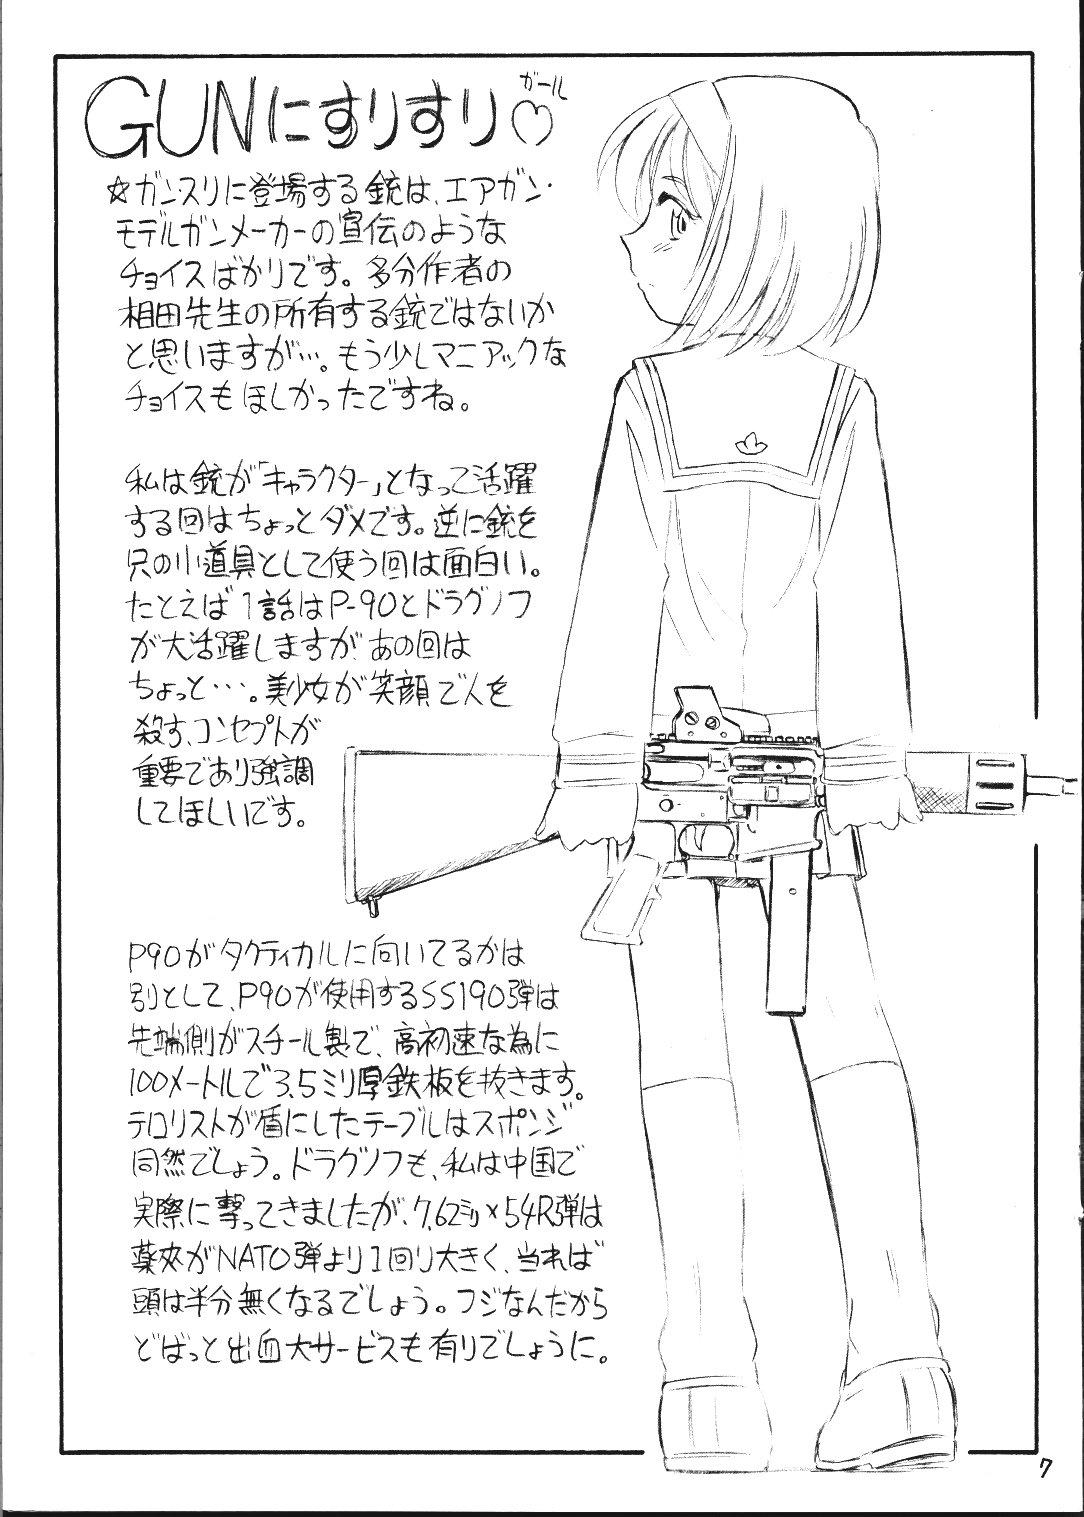 Xxx Gunnisurisurisuru Girl - Gunslinger girl 3some - Page 7